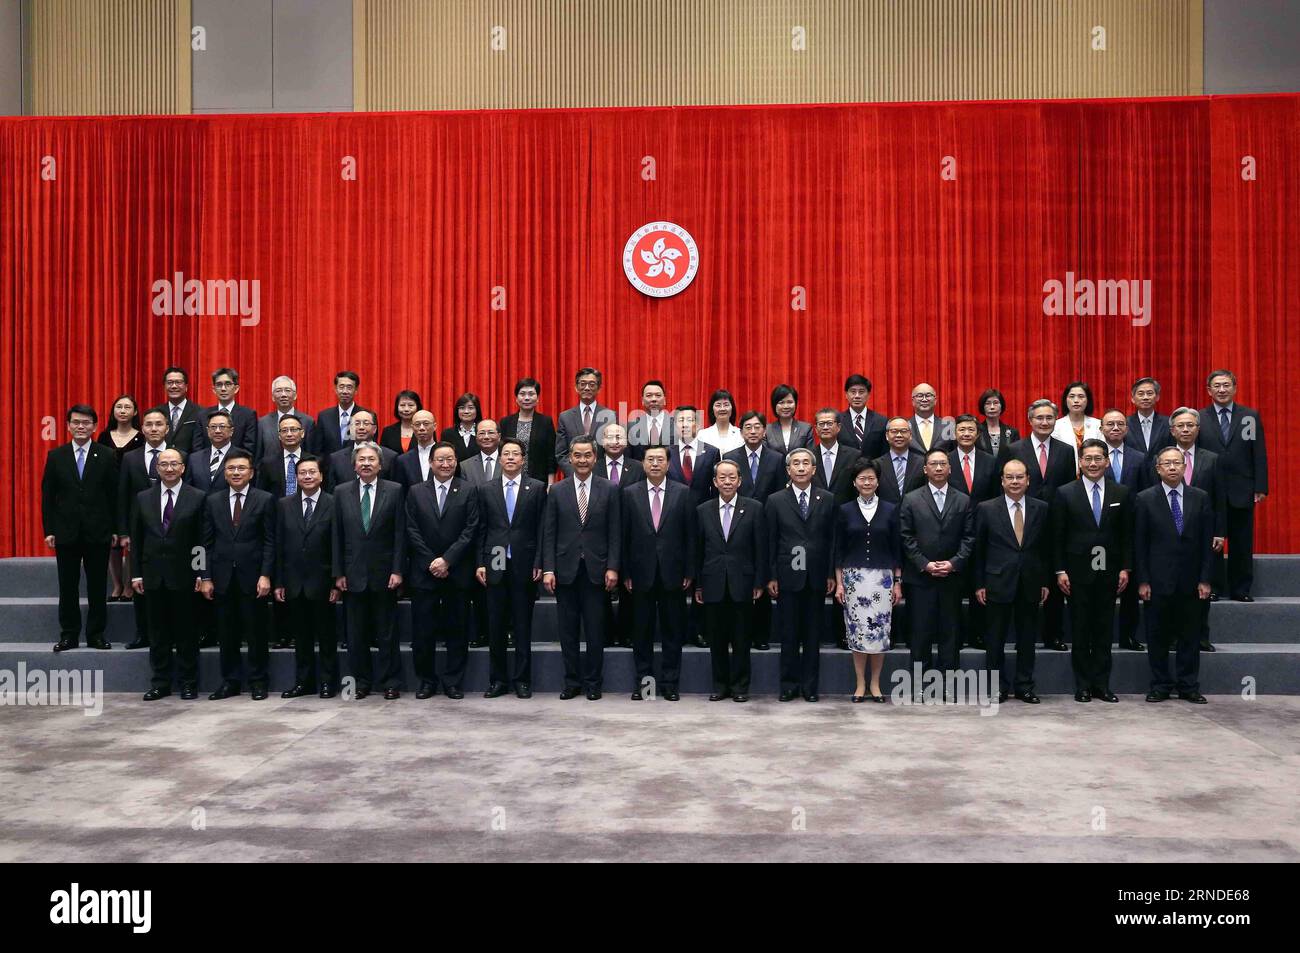 (160517) -- HONGKONG, 17. Mai 2016 -- Zhang Dejiang (C, Front), Vorsitzender des Ständigen Ausschusses des Nationalen Volkskongresses Chinas, posiert für ein Gruppenfoto, wenn er am 17. Mai 2016 das Hauptquartier der Regierung der Sonderverwaltungsregion Hongkong (SAR) in Hongkong, Südchina, besucht. Zhang wurde von der SAR-Chefin und Regierungsbeamten über ihre Arbeit informiert. )(mcg) CHINA-HONG KONG-ZHANG DEJIANG-INSPEKTIONSTOUR (CN) LiuxWeibing PUBLICATIONxNOTxINxCHN 160517 Hong KONG 17. Mai 2016 Zhang Dejiang C Front Vorsitzender des Thing Committee of China S National Celebrities S Stockfoto